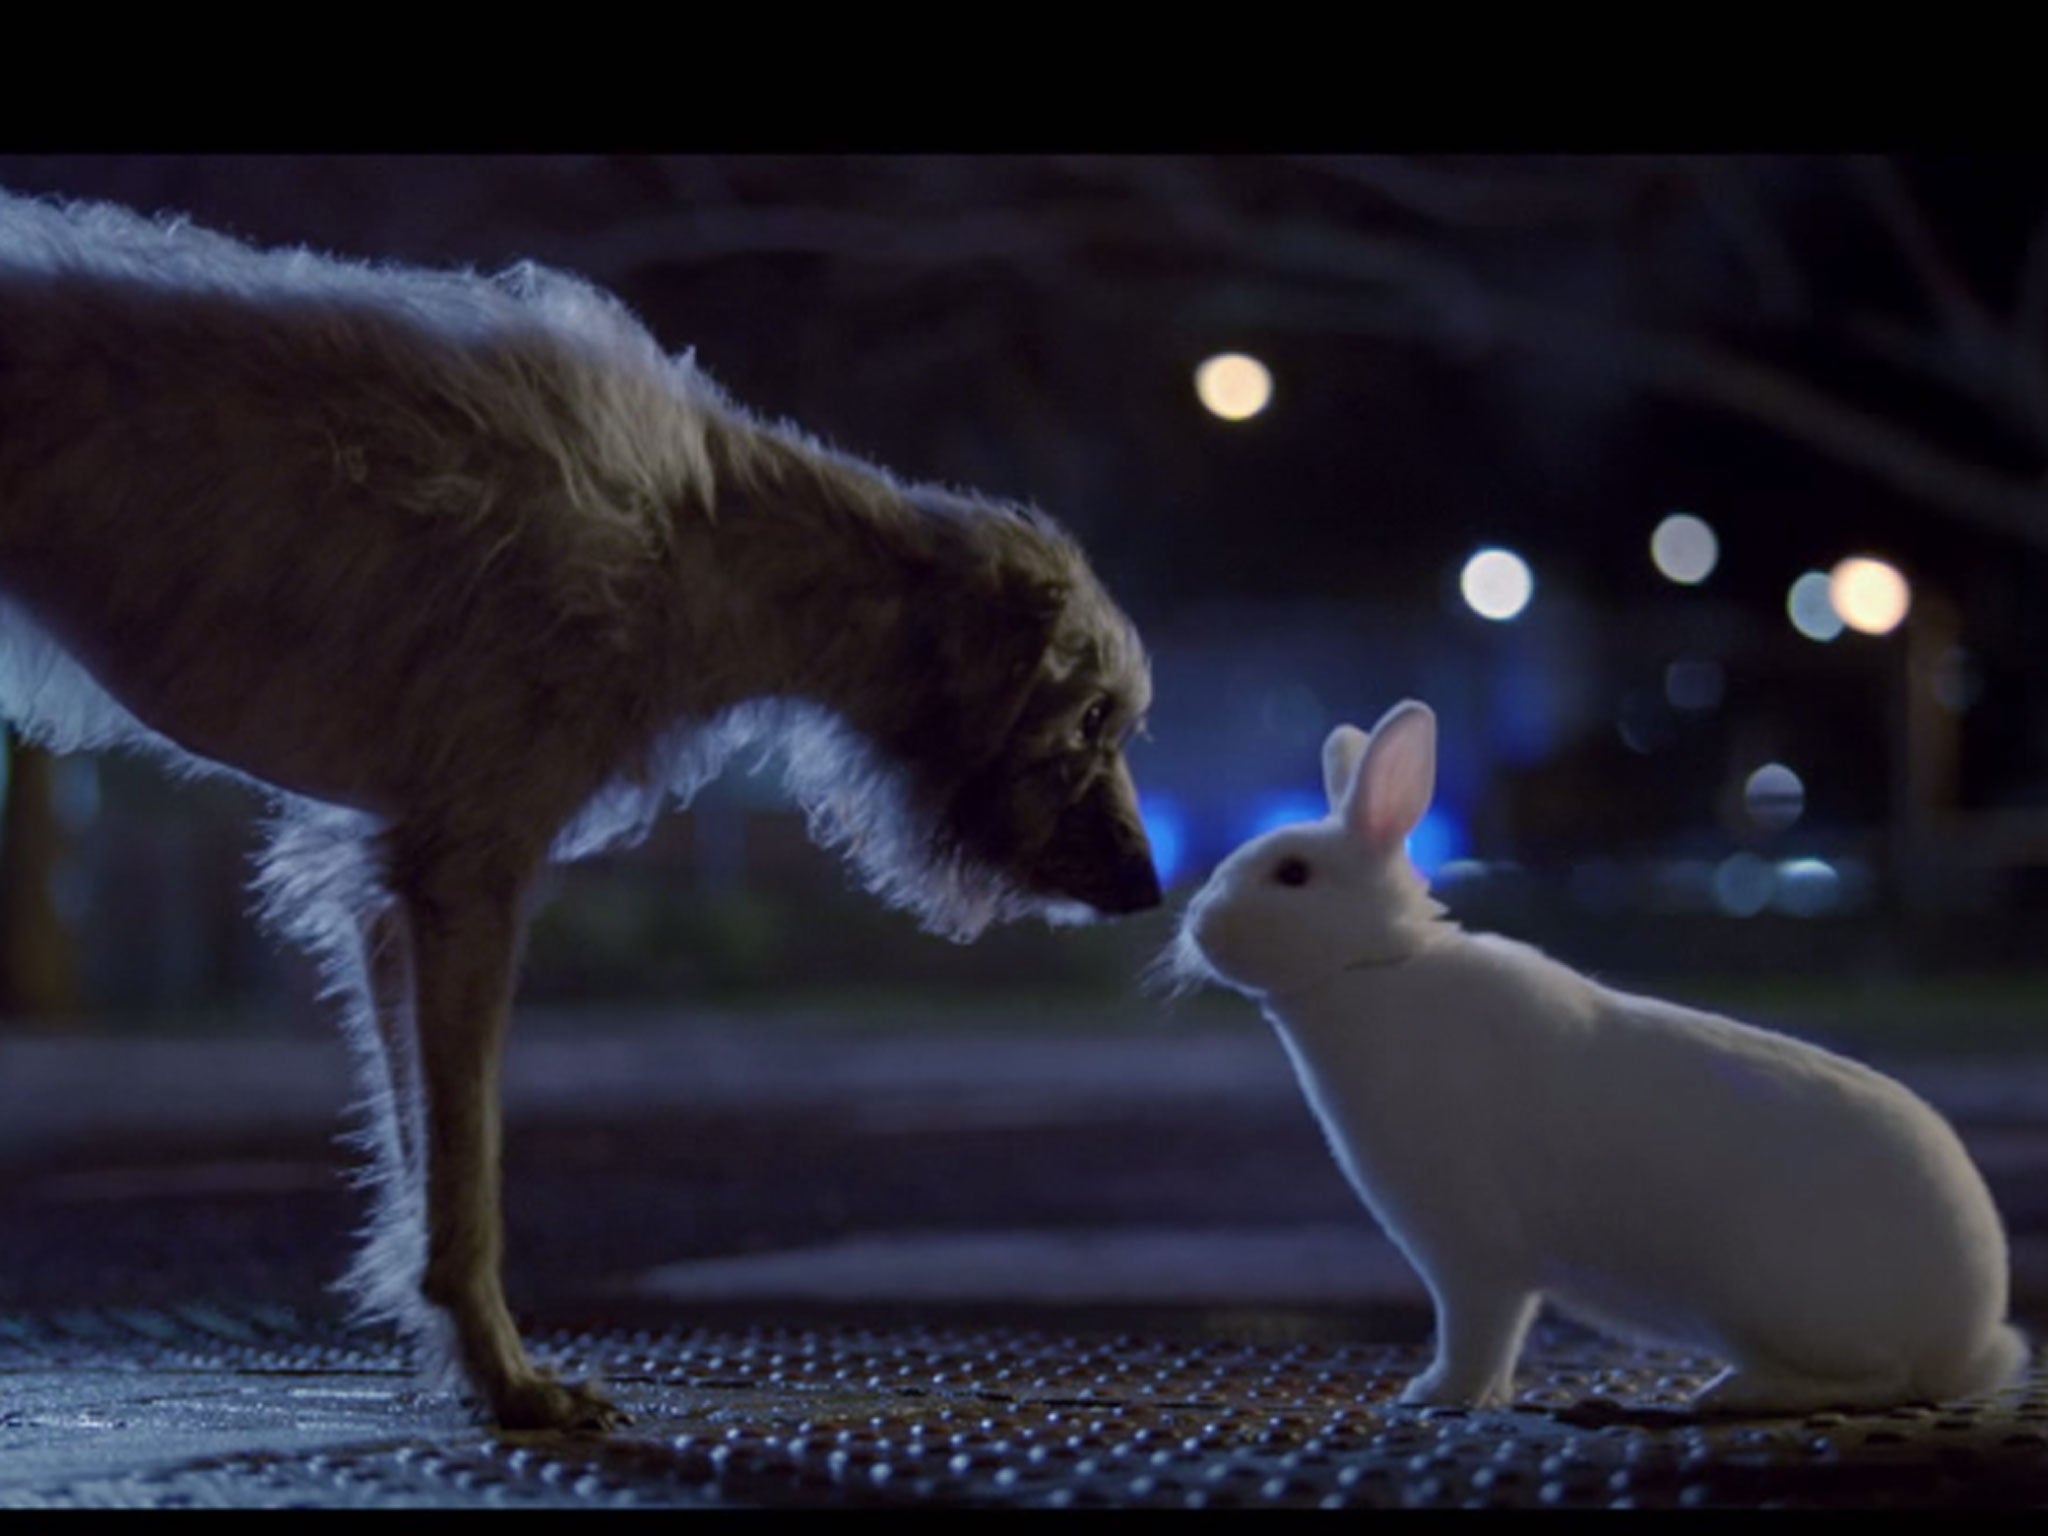 Baxter meets a rabbit in the Blue Cross advert